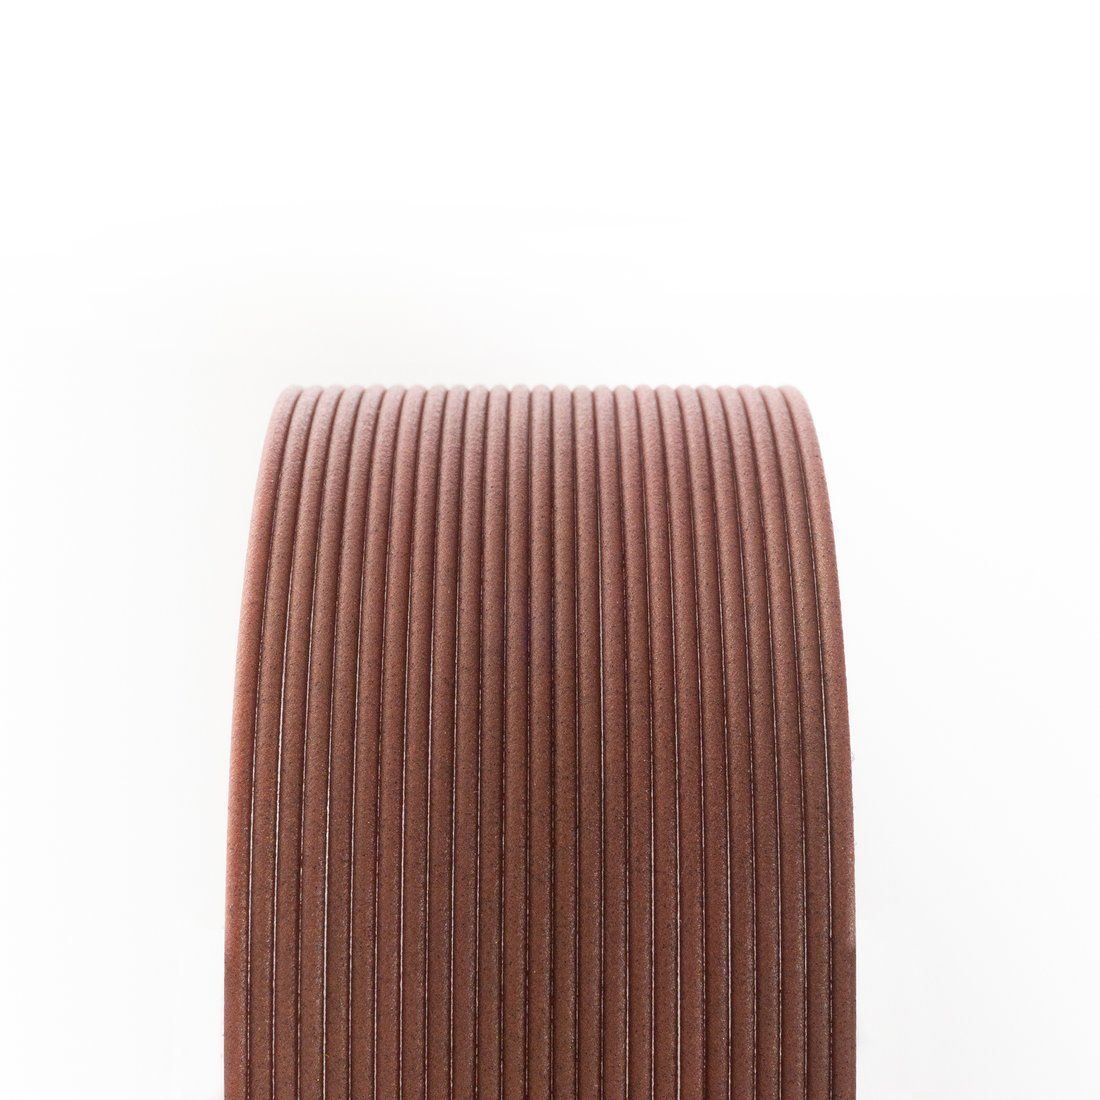 Matte Fiber HTPLA - Mahogany Wood 1.75mm 3D printing Filament